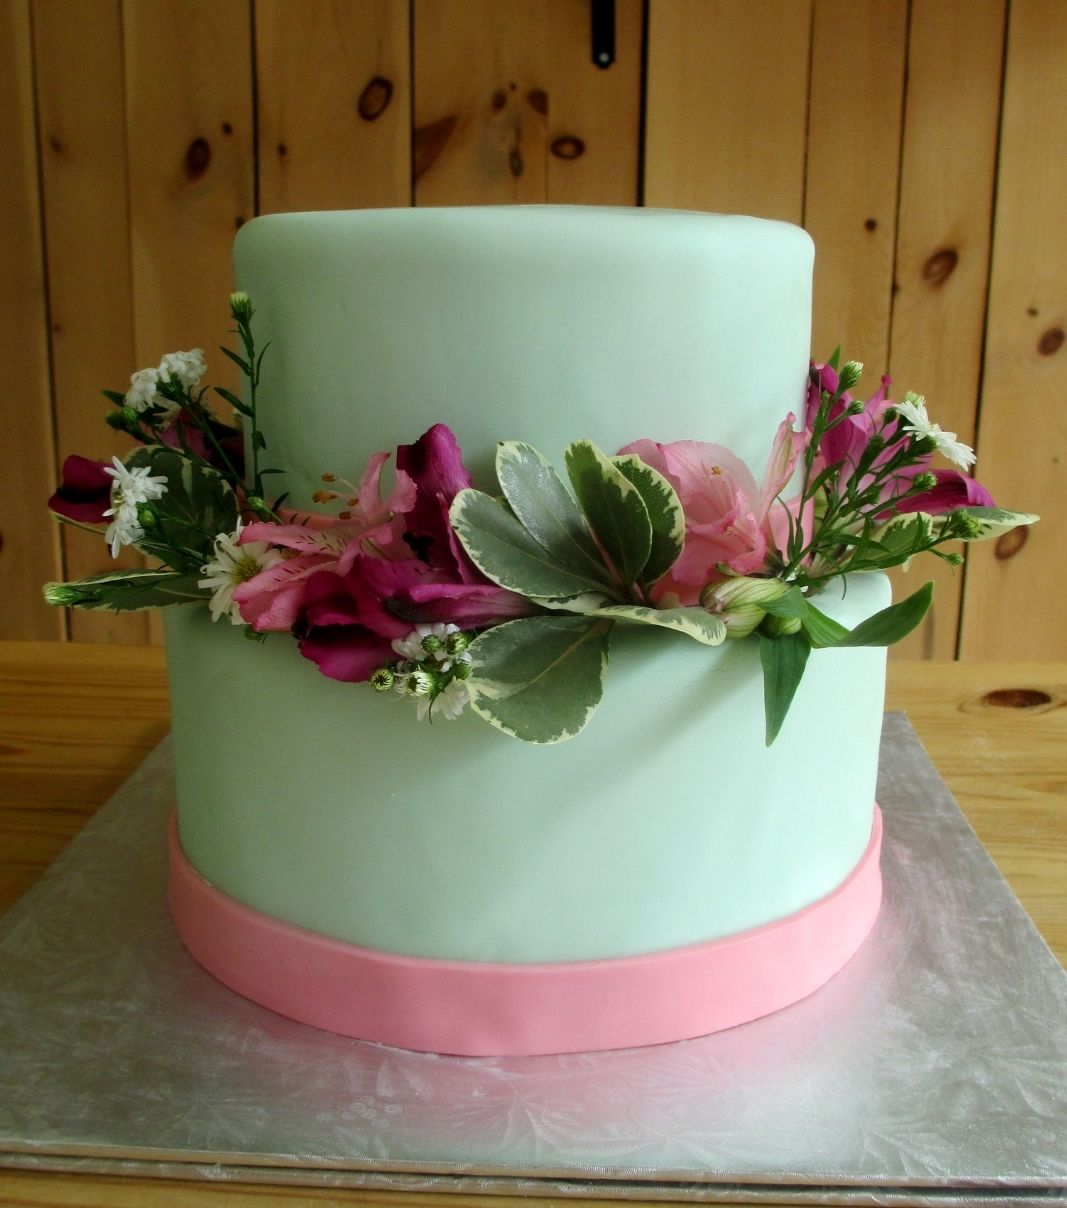 Gâteau d'anniversaire sur mesure: gâteau de 2 étages avec une couverture en fondant vert et rose et décoré de fleurs fraîches.